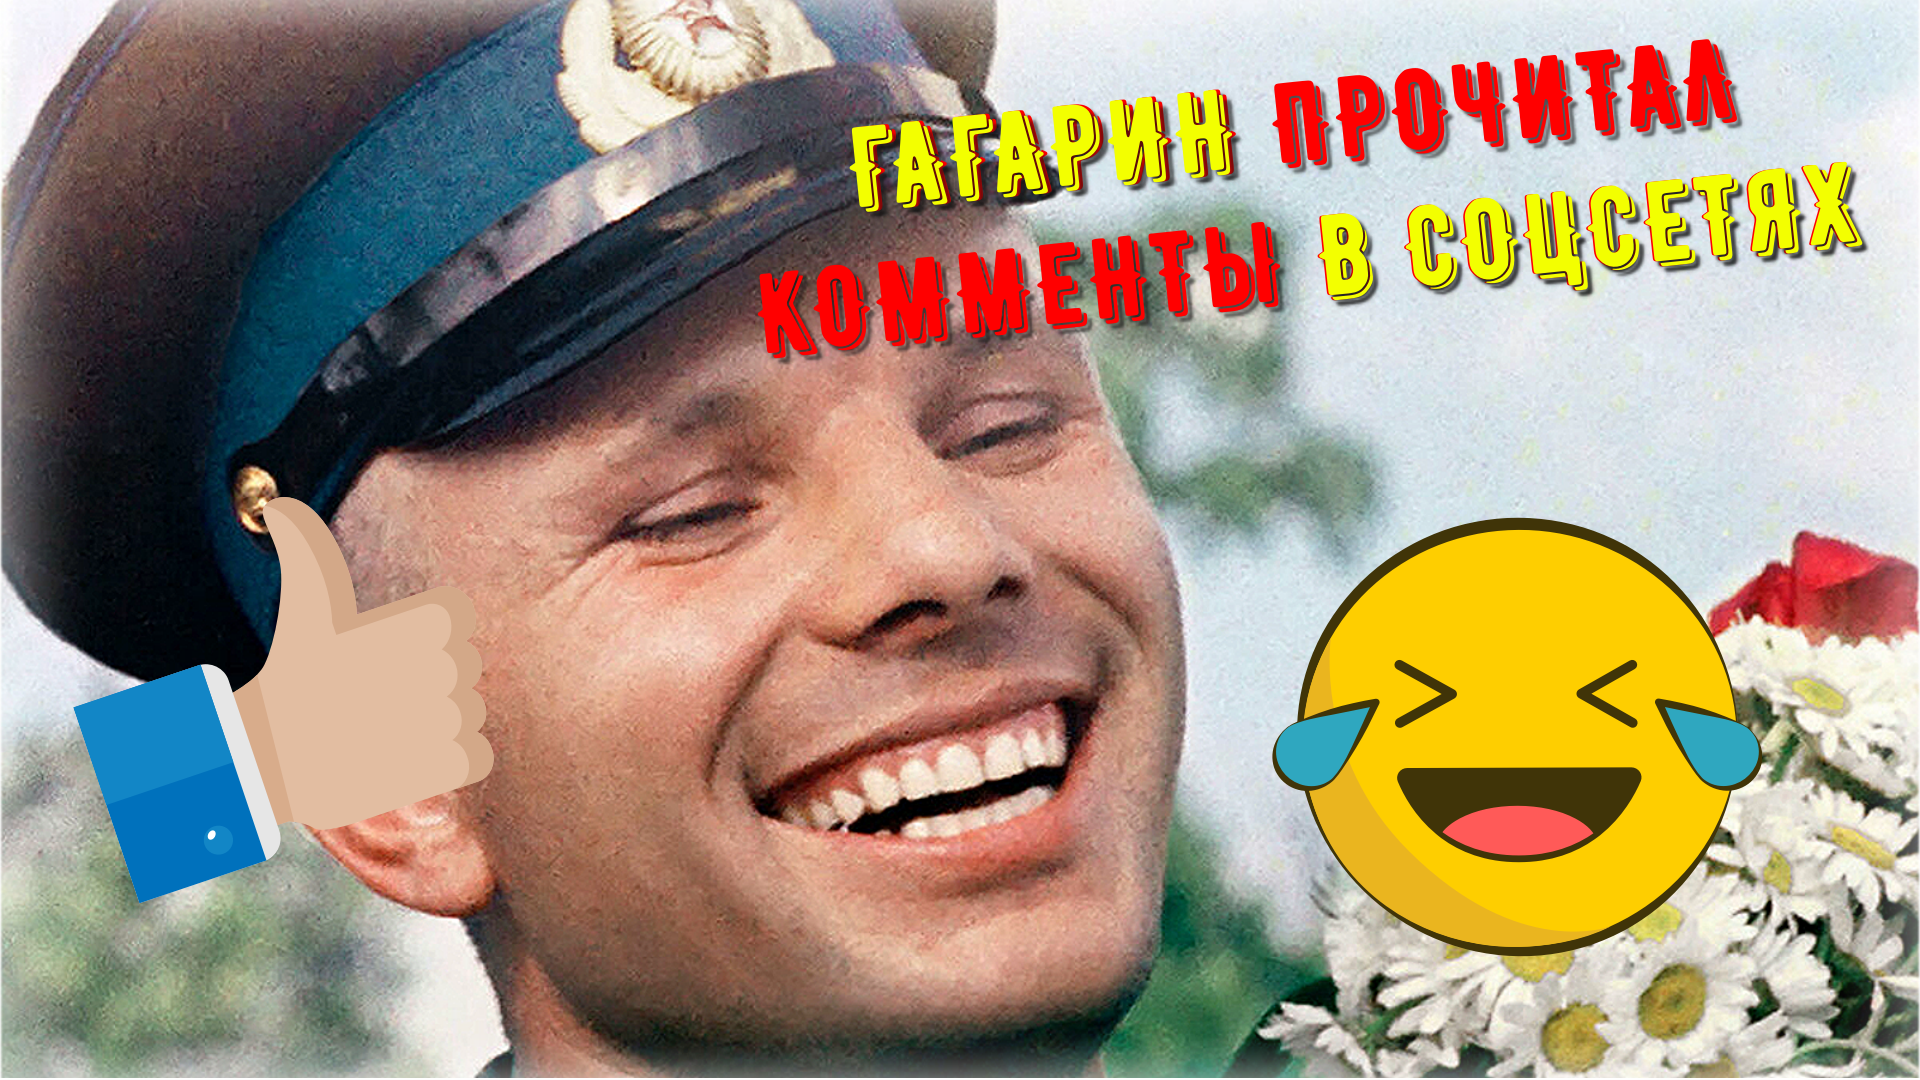 "НИКУДА ОН НЕ ЛЕТАЛ !" 🚀 Комментарии в сети на полёт Юрия Гагарины, если бы интернет уже был в 1961